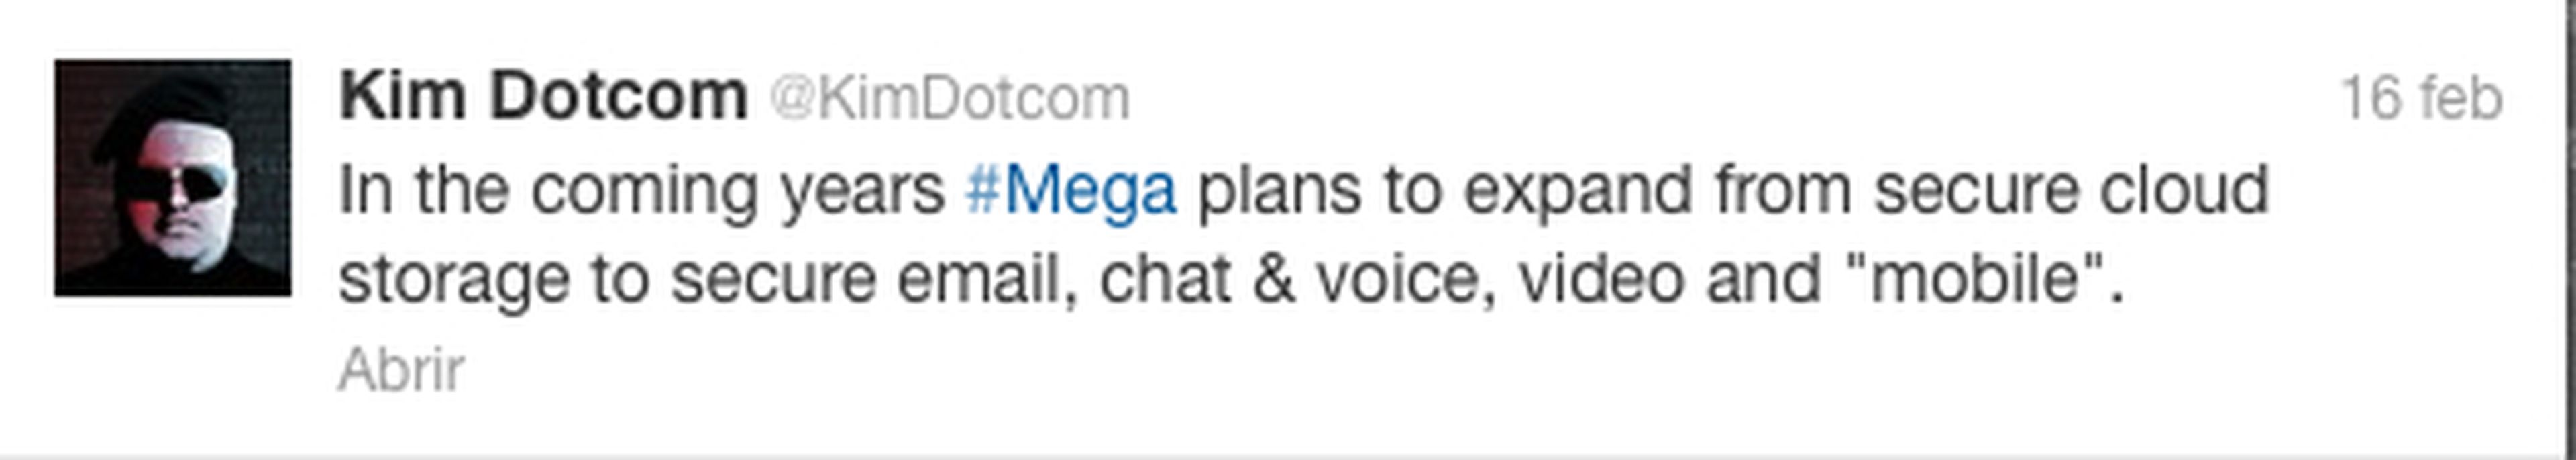 Mega: también correo electrónico y chat en el futuro